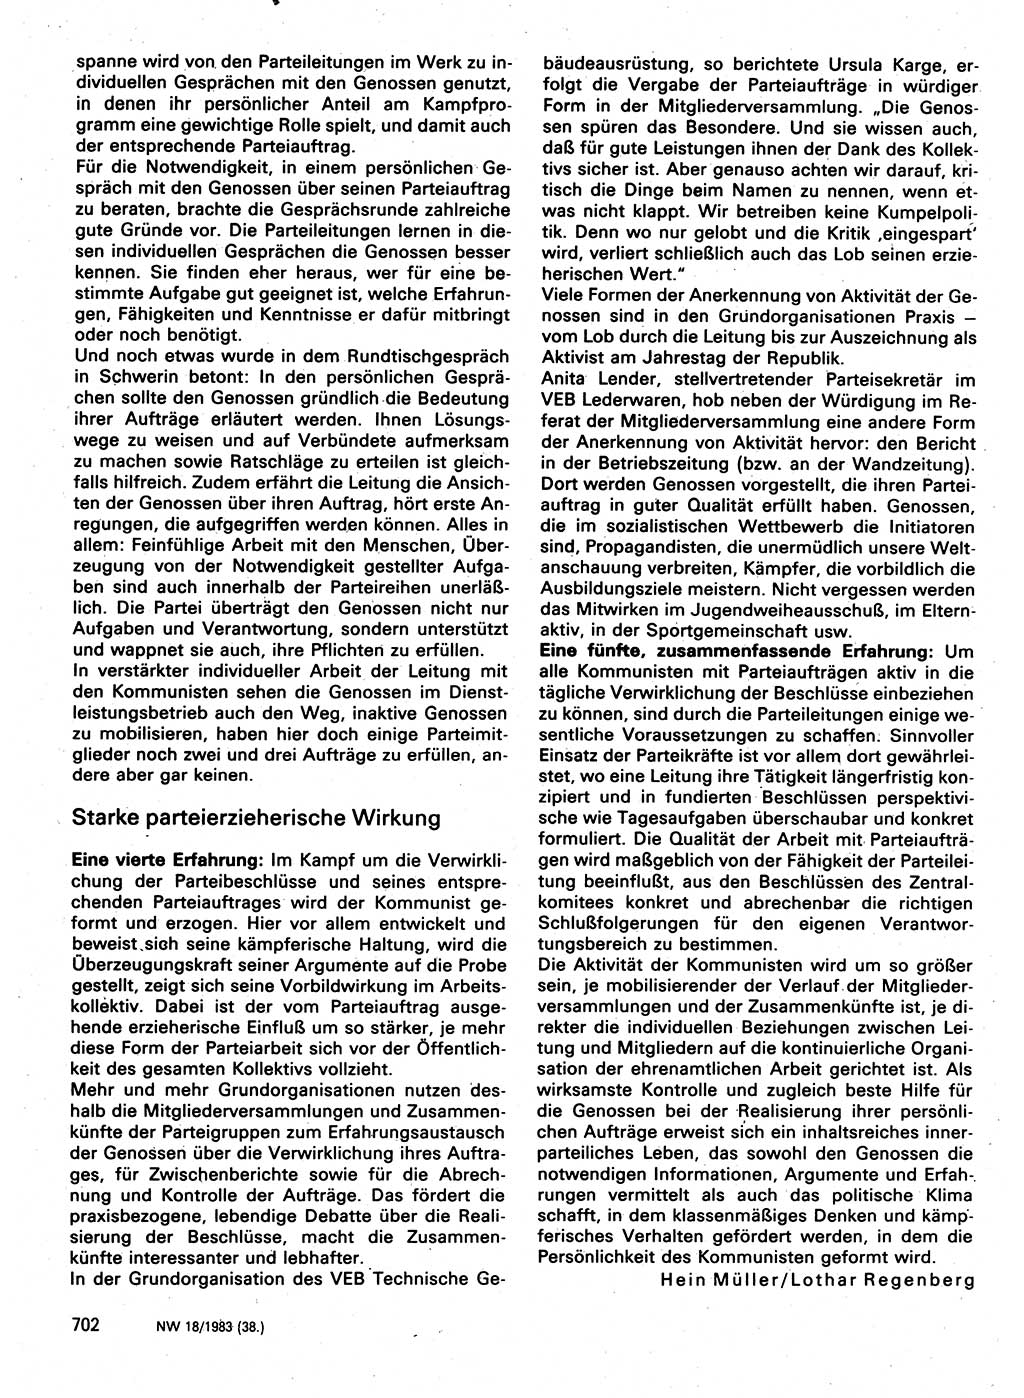 Neuer Weg (NW), Organ des Zentralkomitees (ZK) der SED (Sozialistische Einheitspartei Deutschlands) für Fragen des Parteilebens, 38. Jahrgang [Deutsche Demokratische Republik (DDR)] 1983, Seite 702 (NW ZK SED DDR 1983, S. 702)